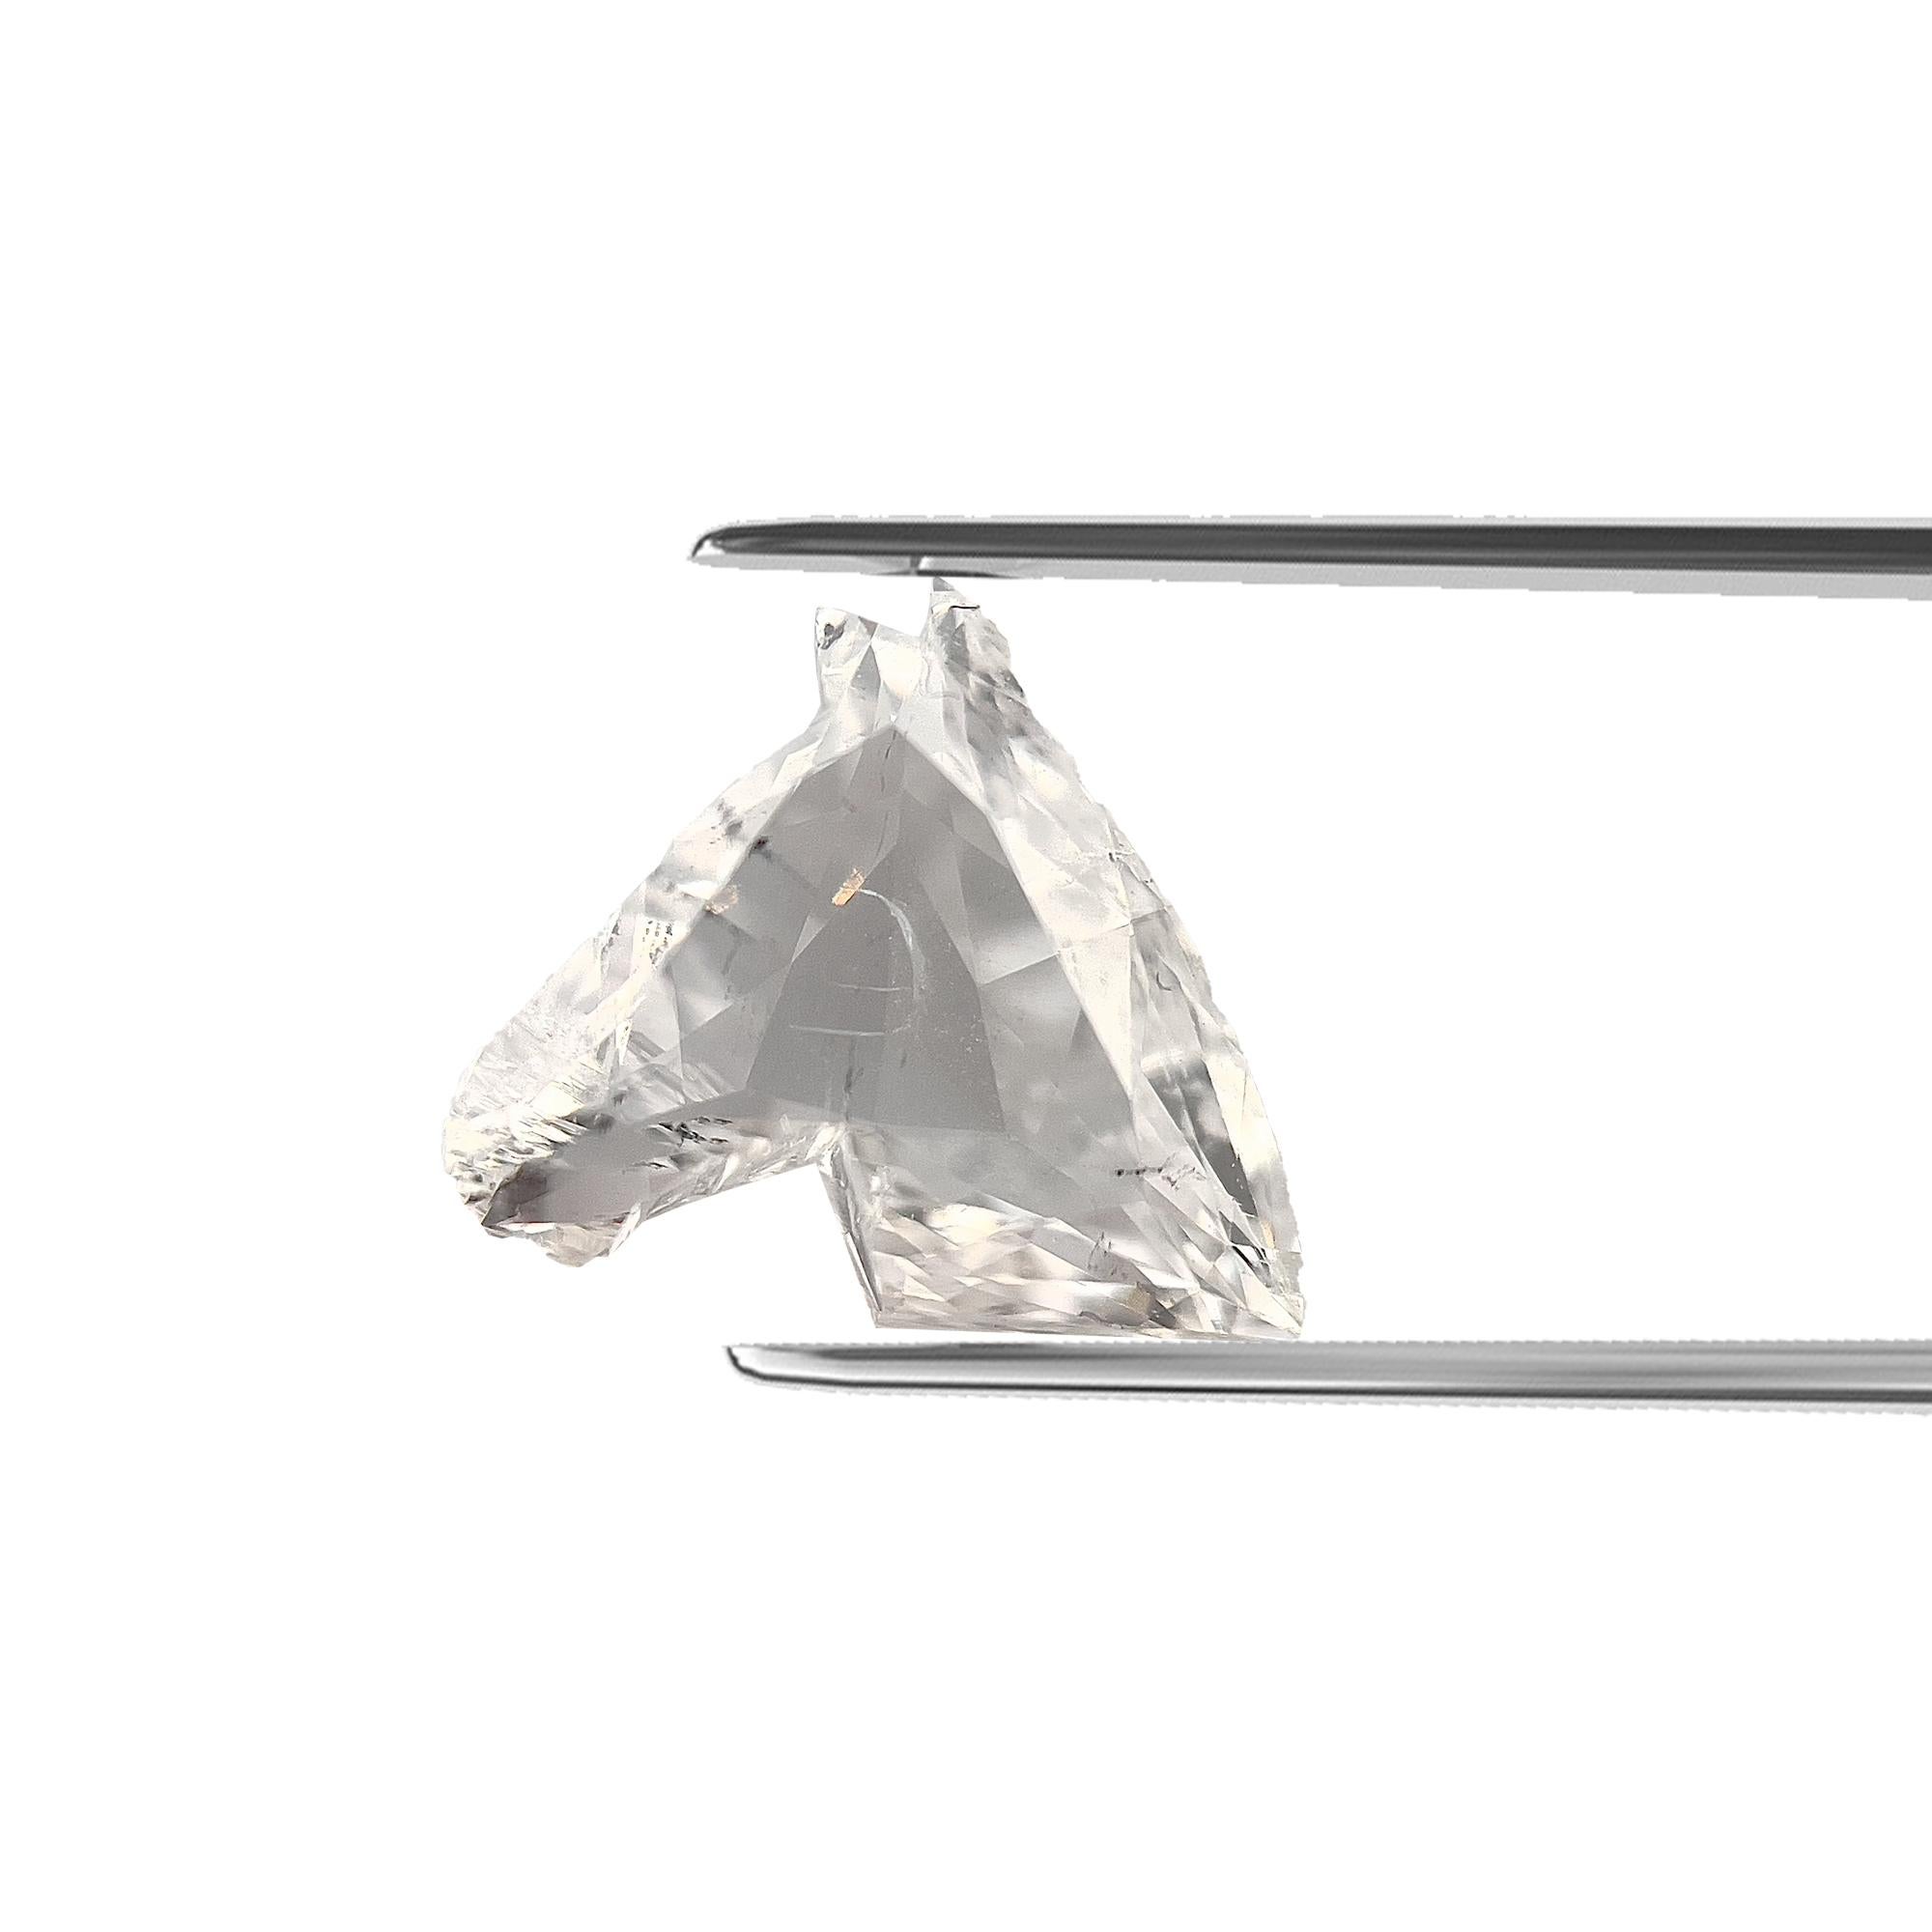 ARTIKELBEZEICHNUNG

ID #: 55303
Form des Steins: Pferdekopf 
Diamant Gewicht: 1.06CT
Klarheit: SI2
Farbe: G
Abmessungen: 6.94x7.36x2.70mm
Unser Preis: $4.685
Schätzungspreis: $7,800


Diese echten Diamanten werden von unserem hauseigenen Gemmologen